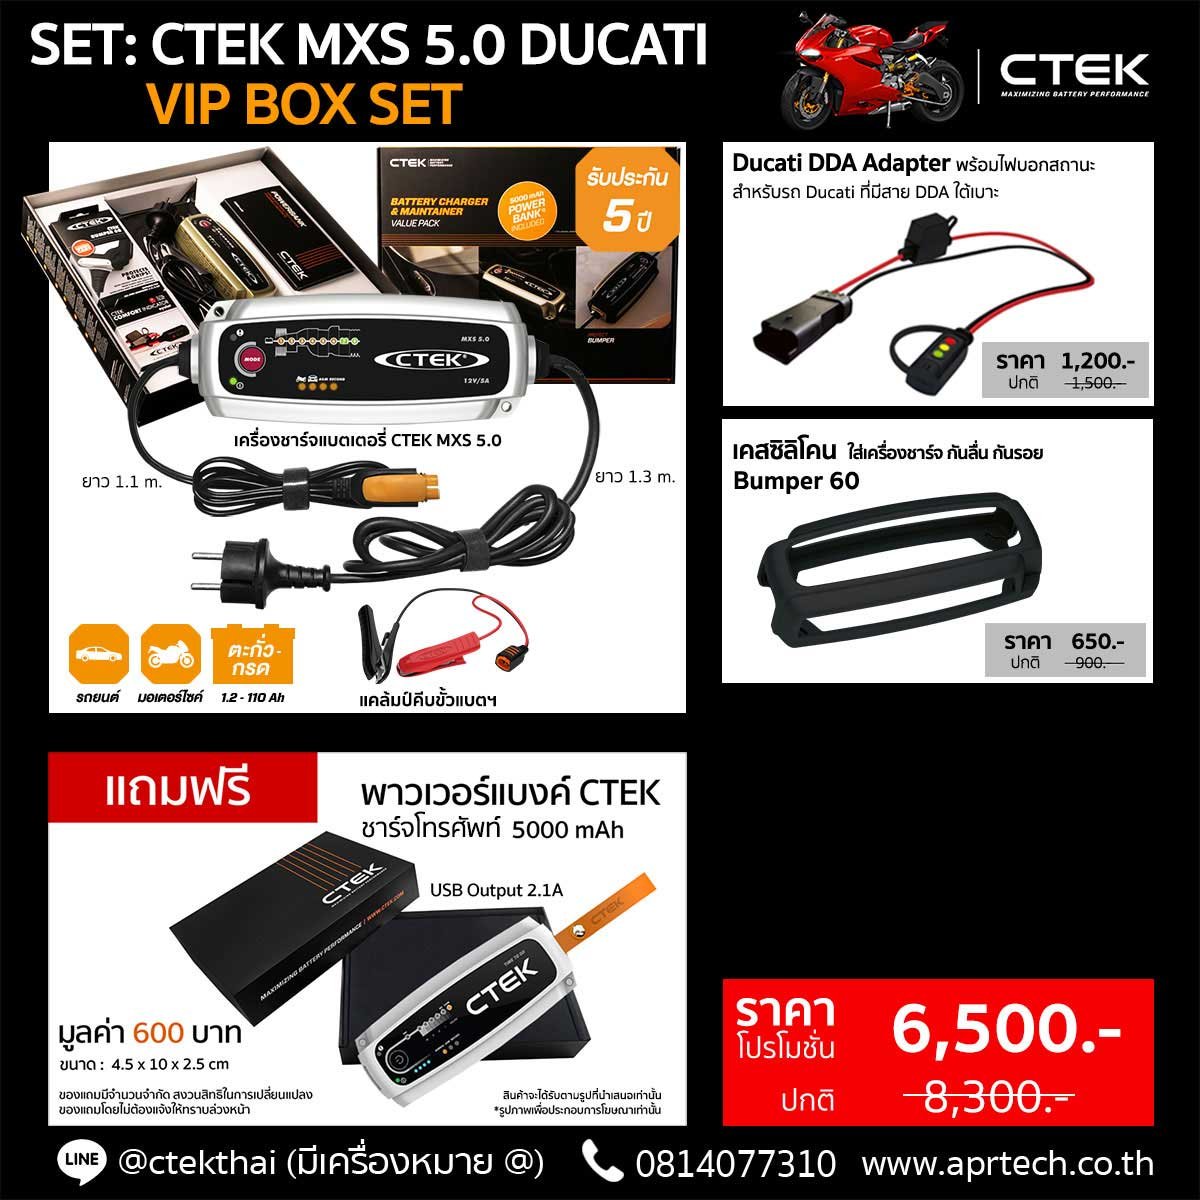 SET CTEK MXS 5.0 Ducati VIP BOX SET (MXS 5.0 + Ducati Adapter Indicator + Bumper)